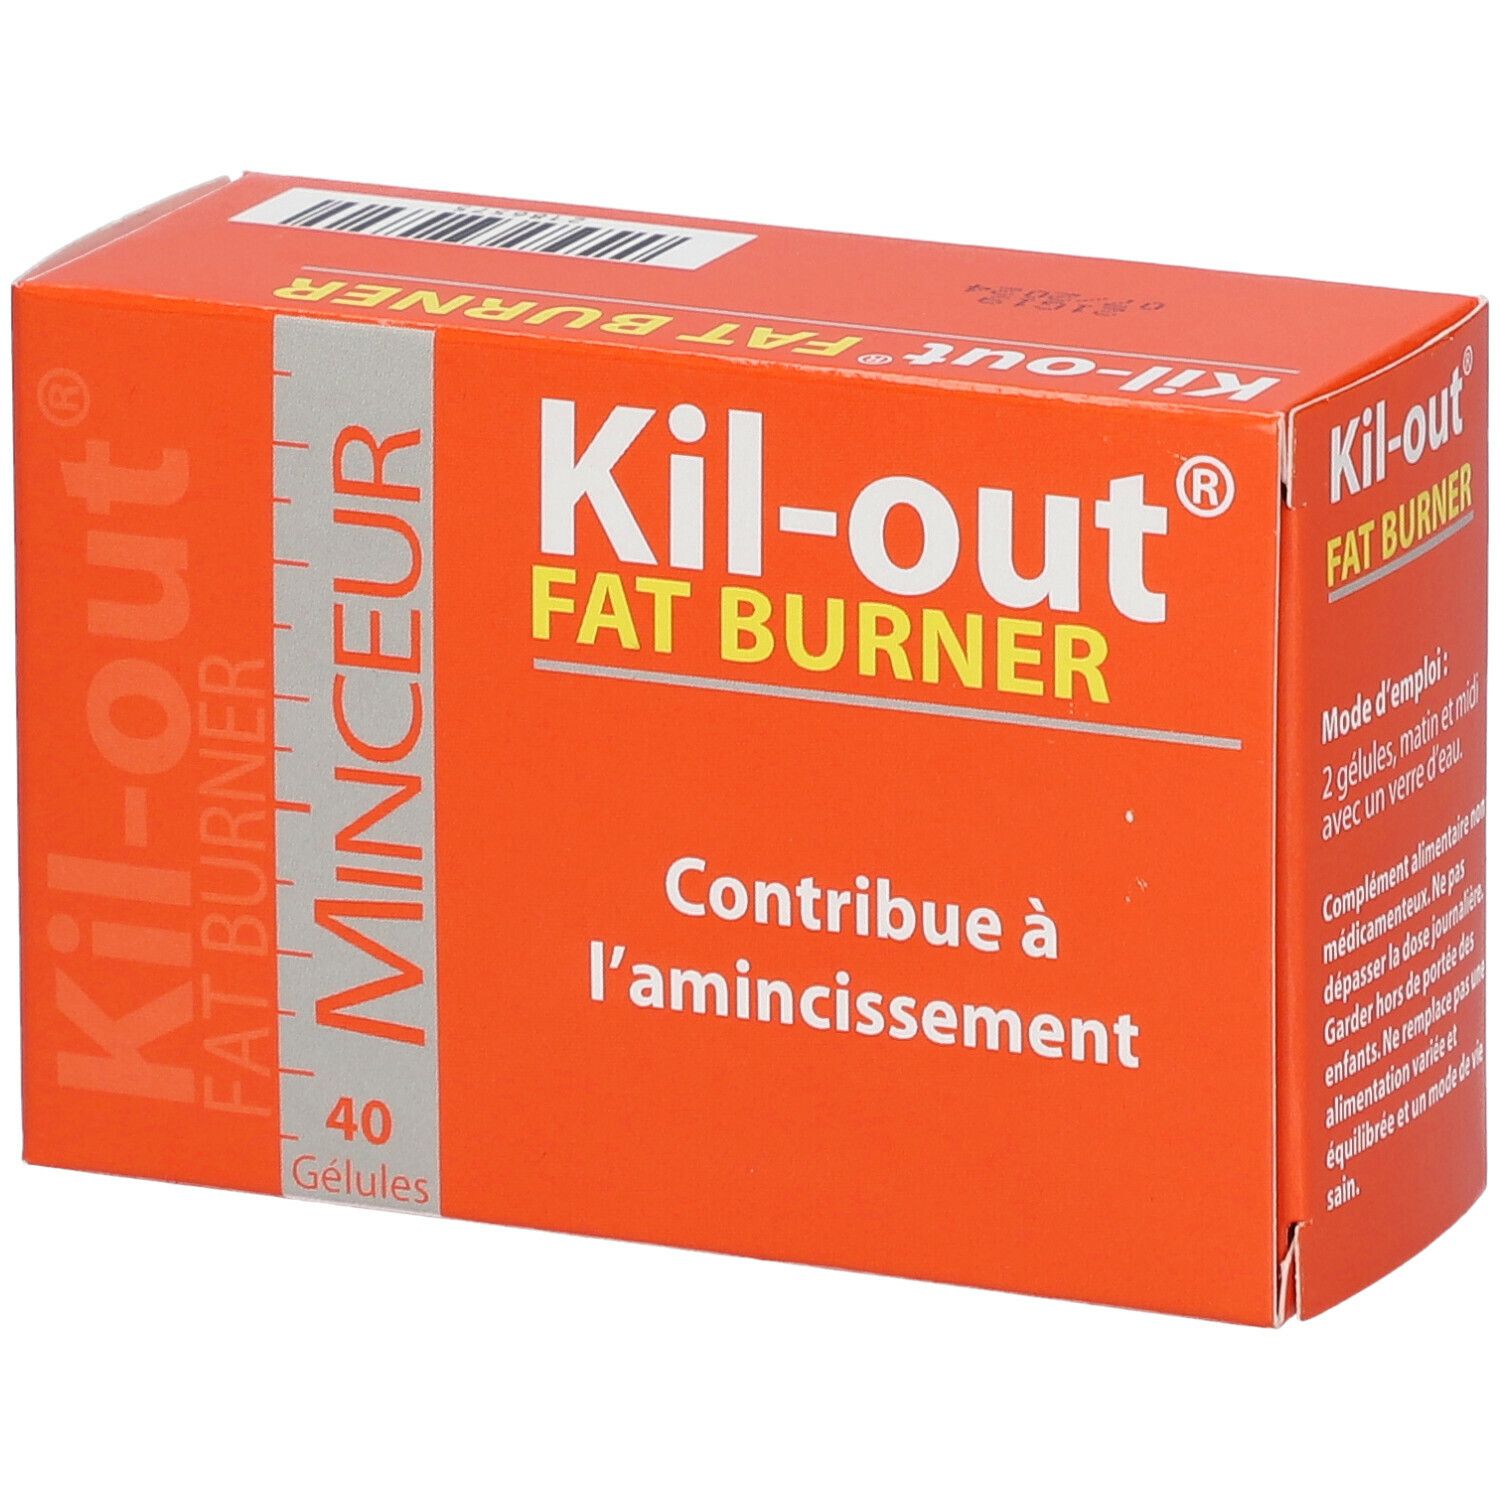 Image of Kil-out® Fat Burner